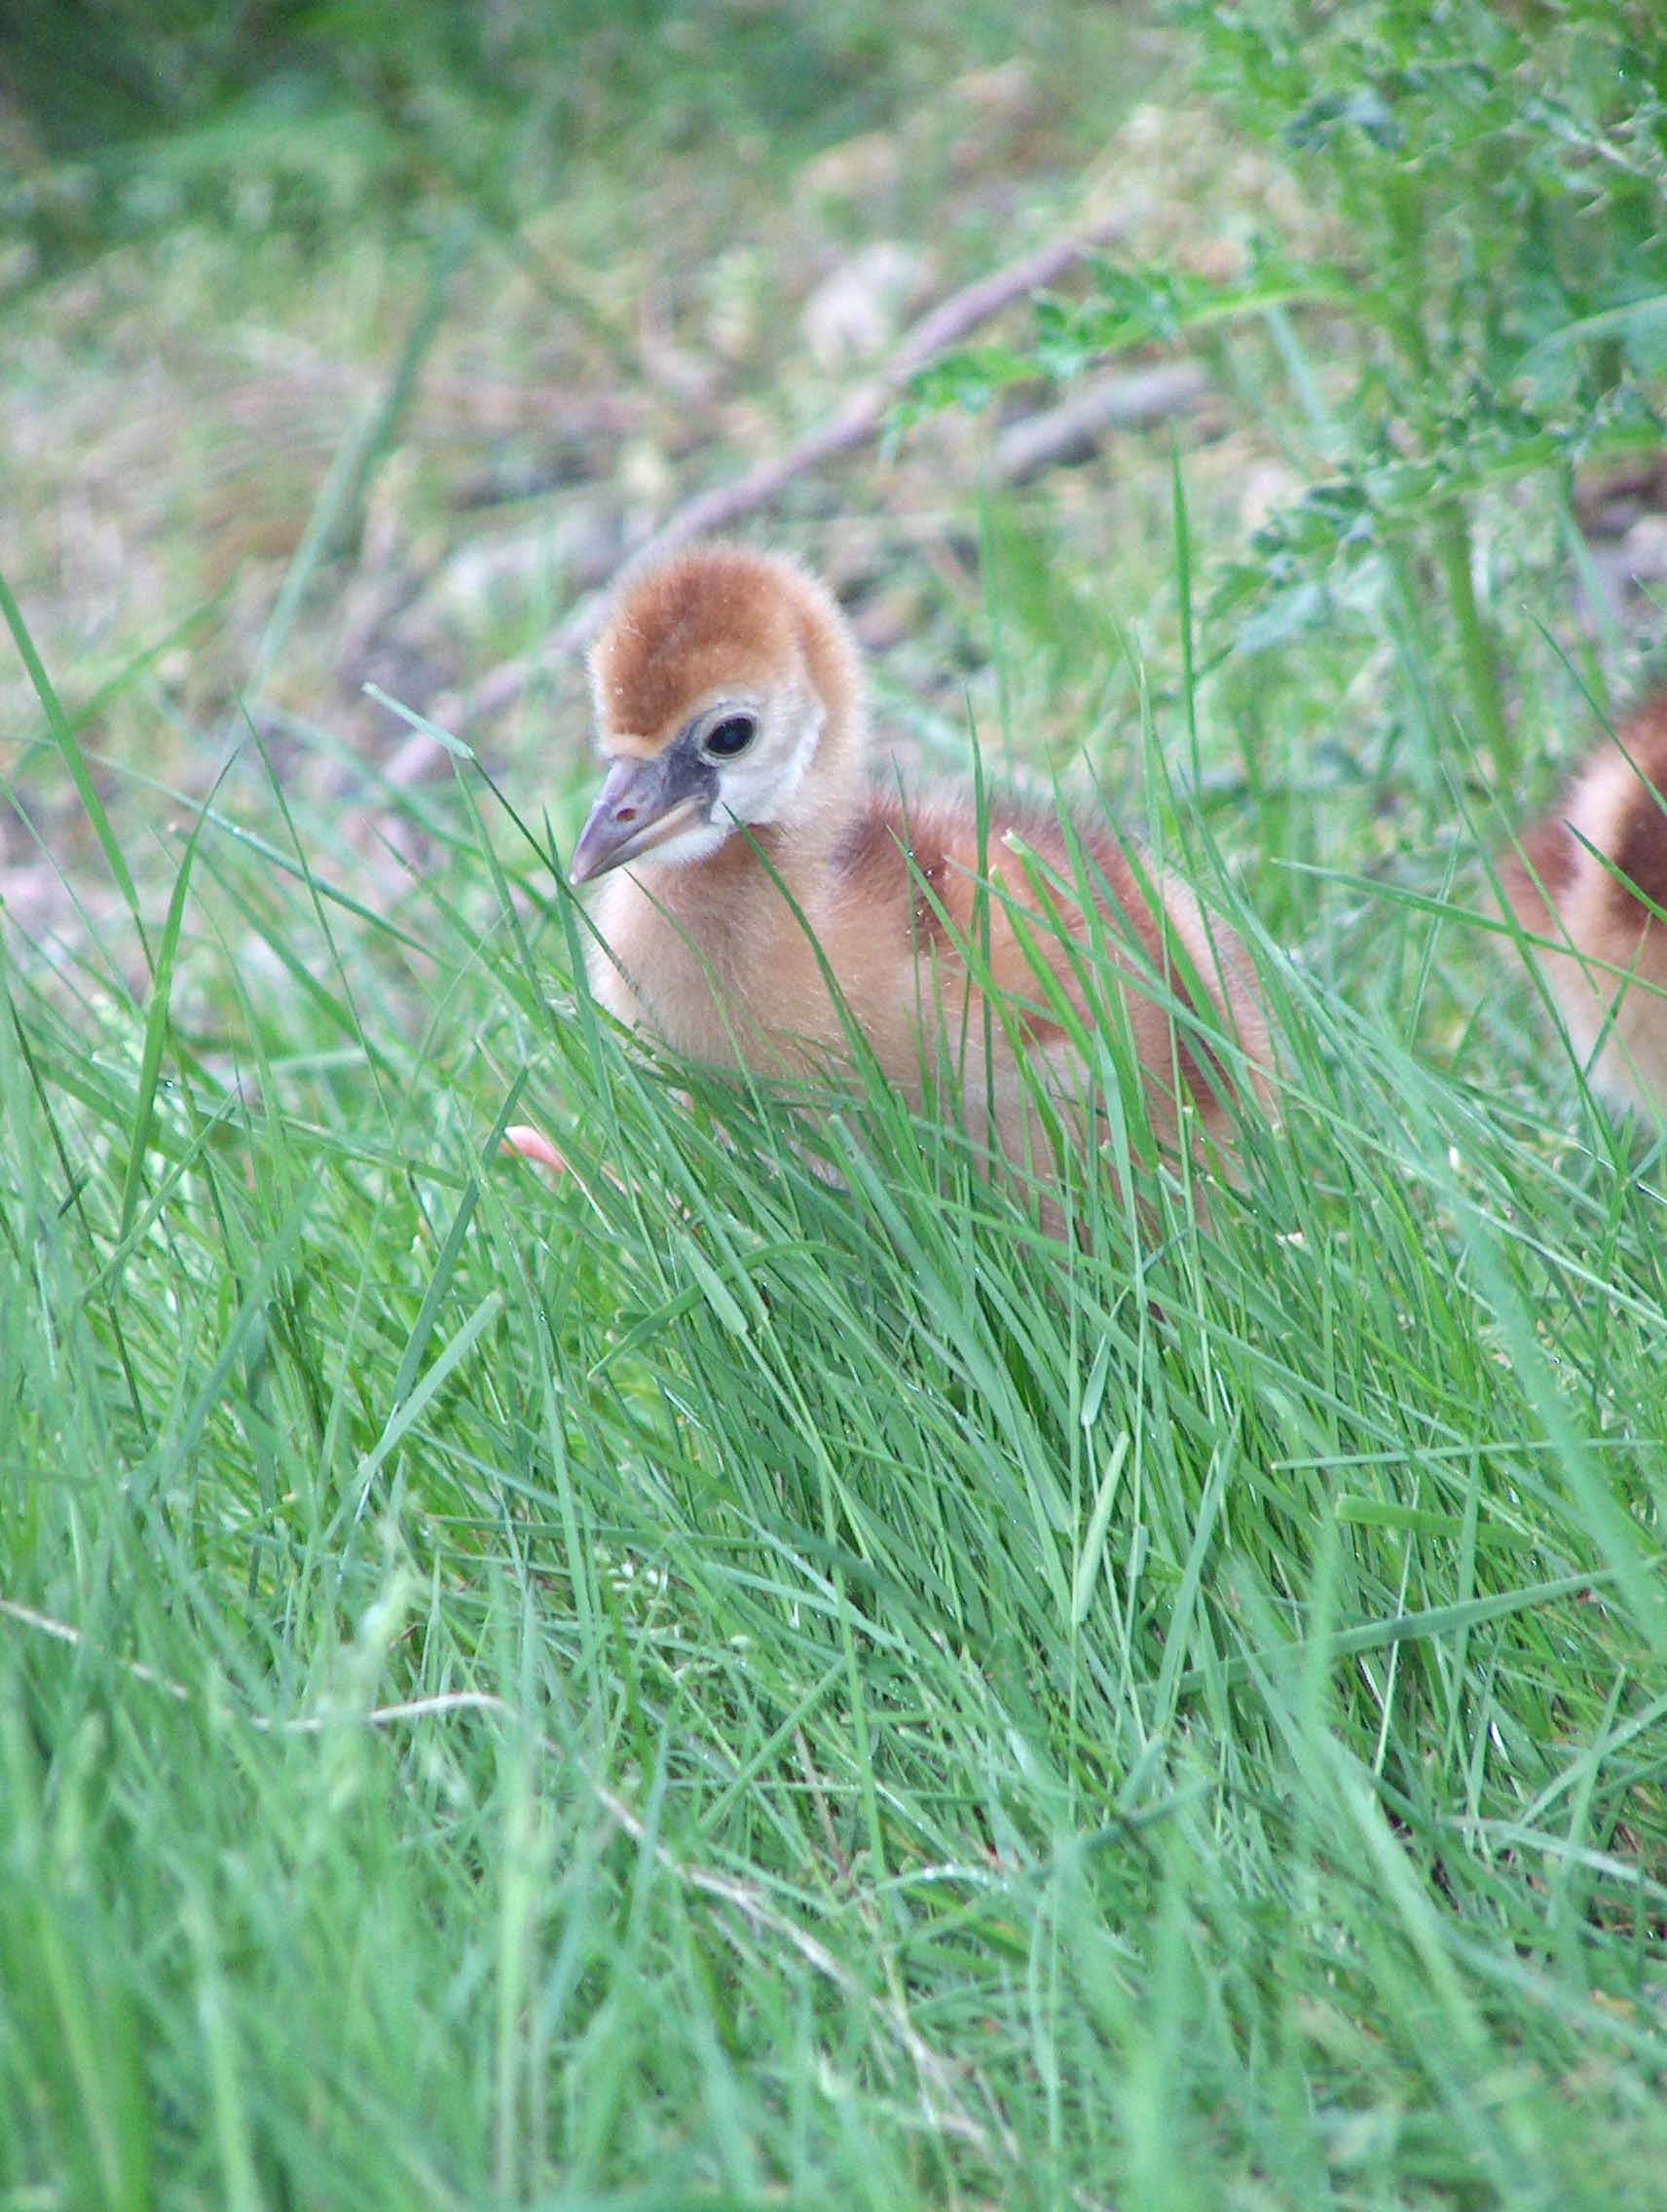 chicks in grass